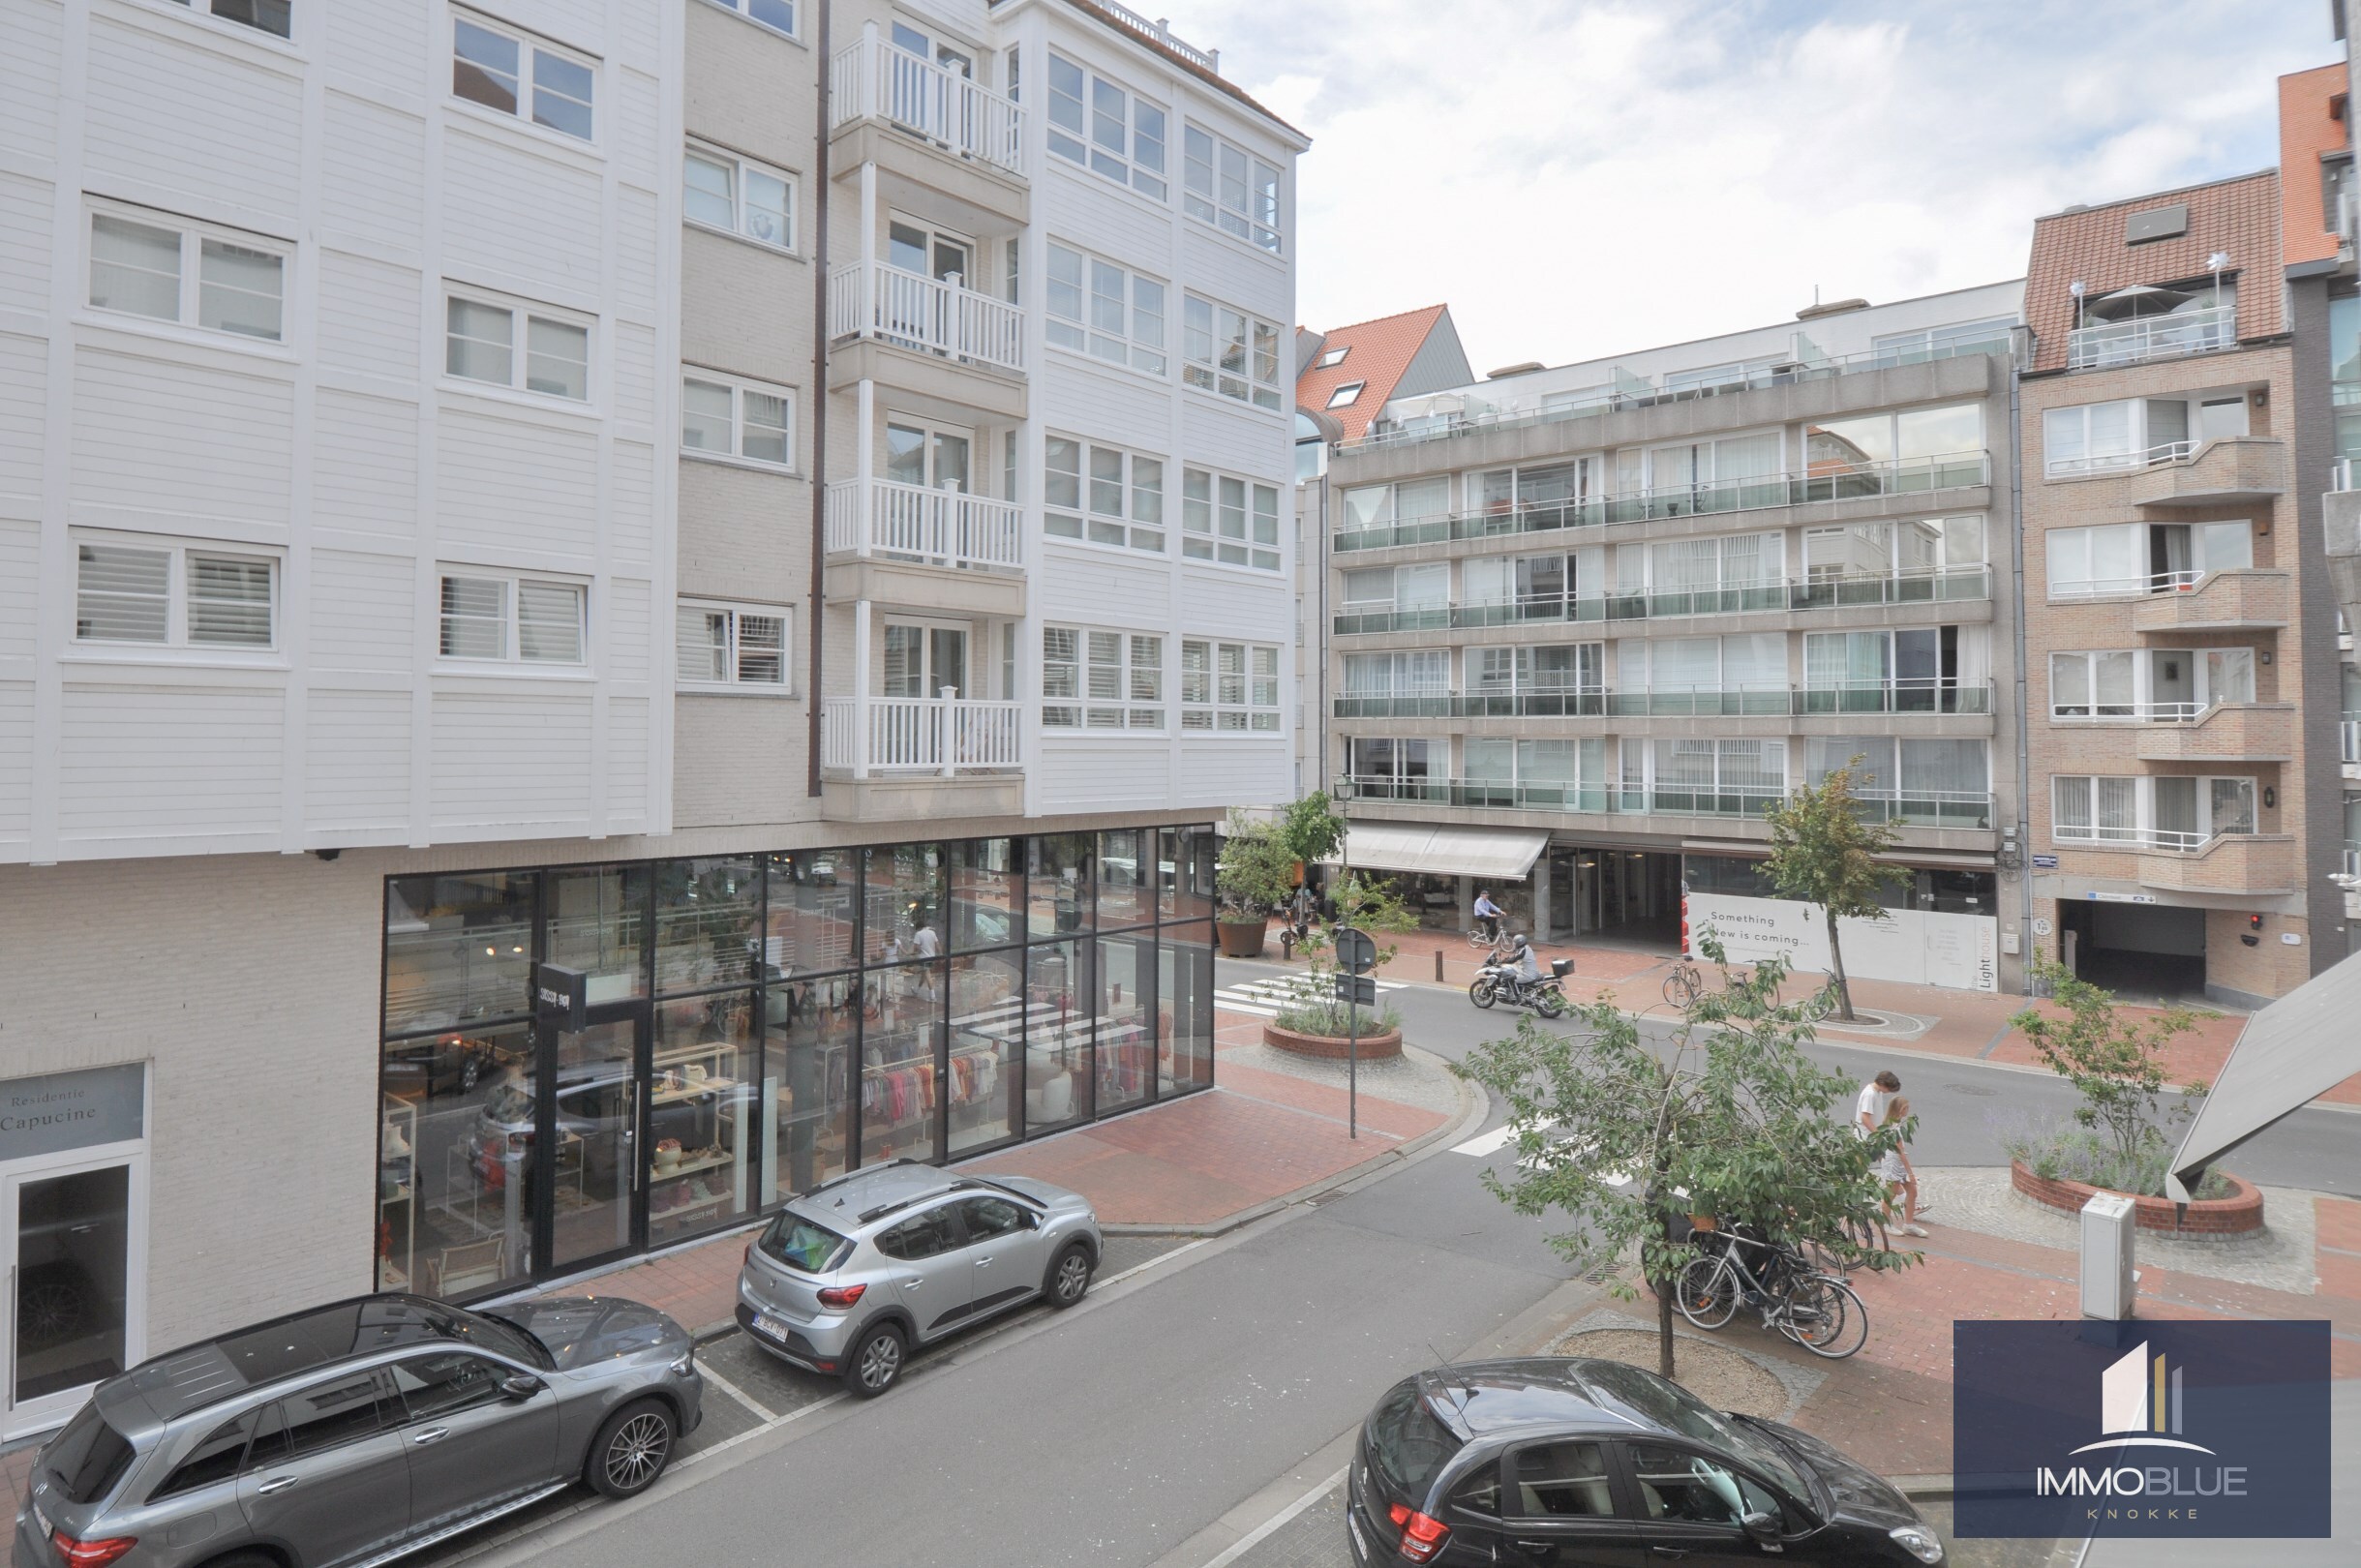 Instapklaar, centraal gelegen duplex appartement nabij de Dumortierlaan. 